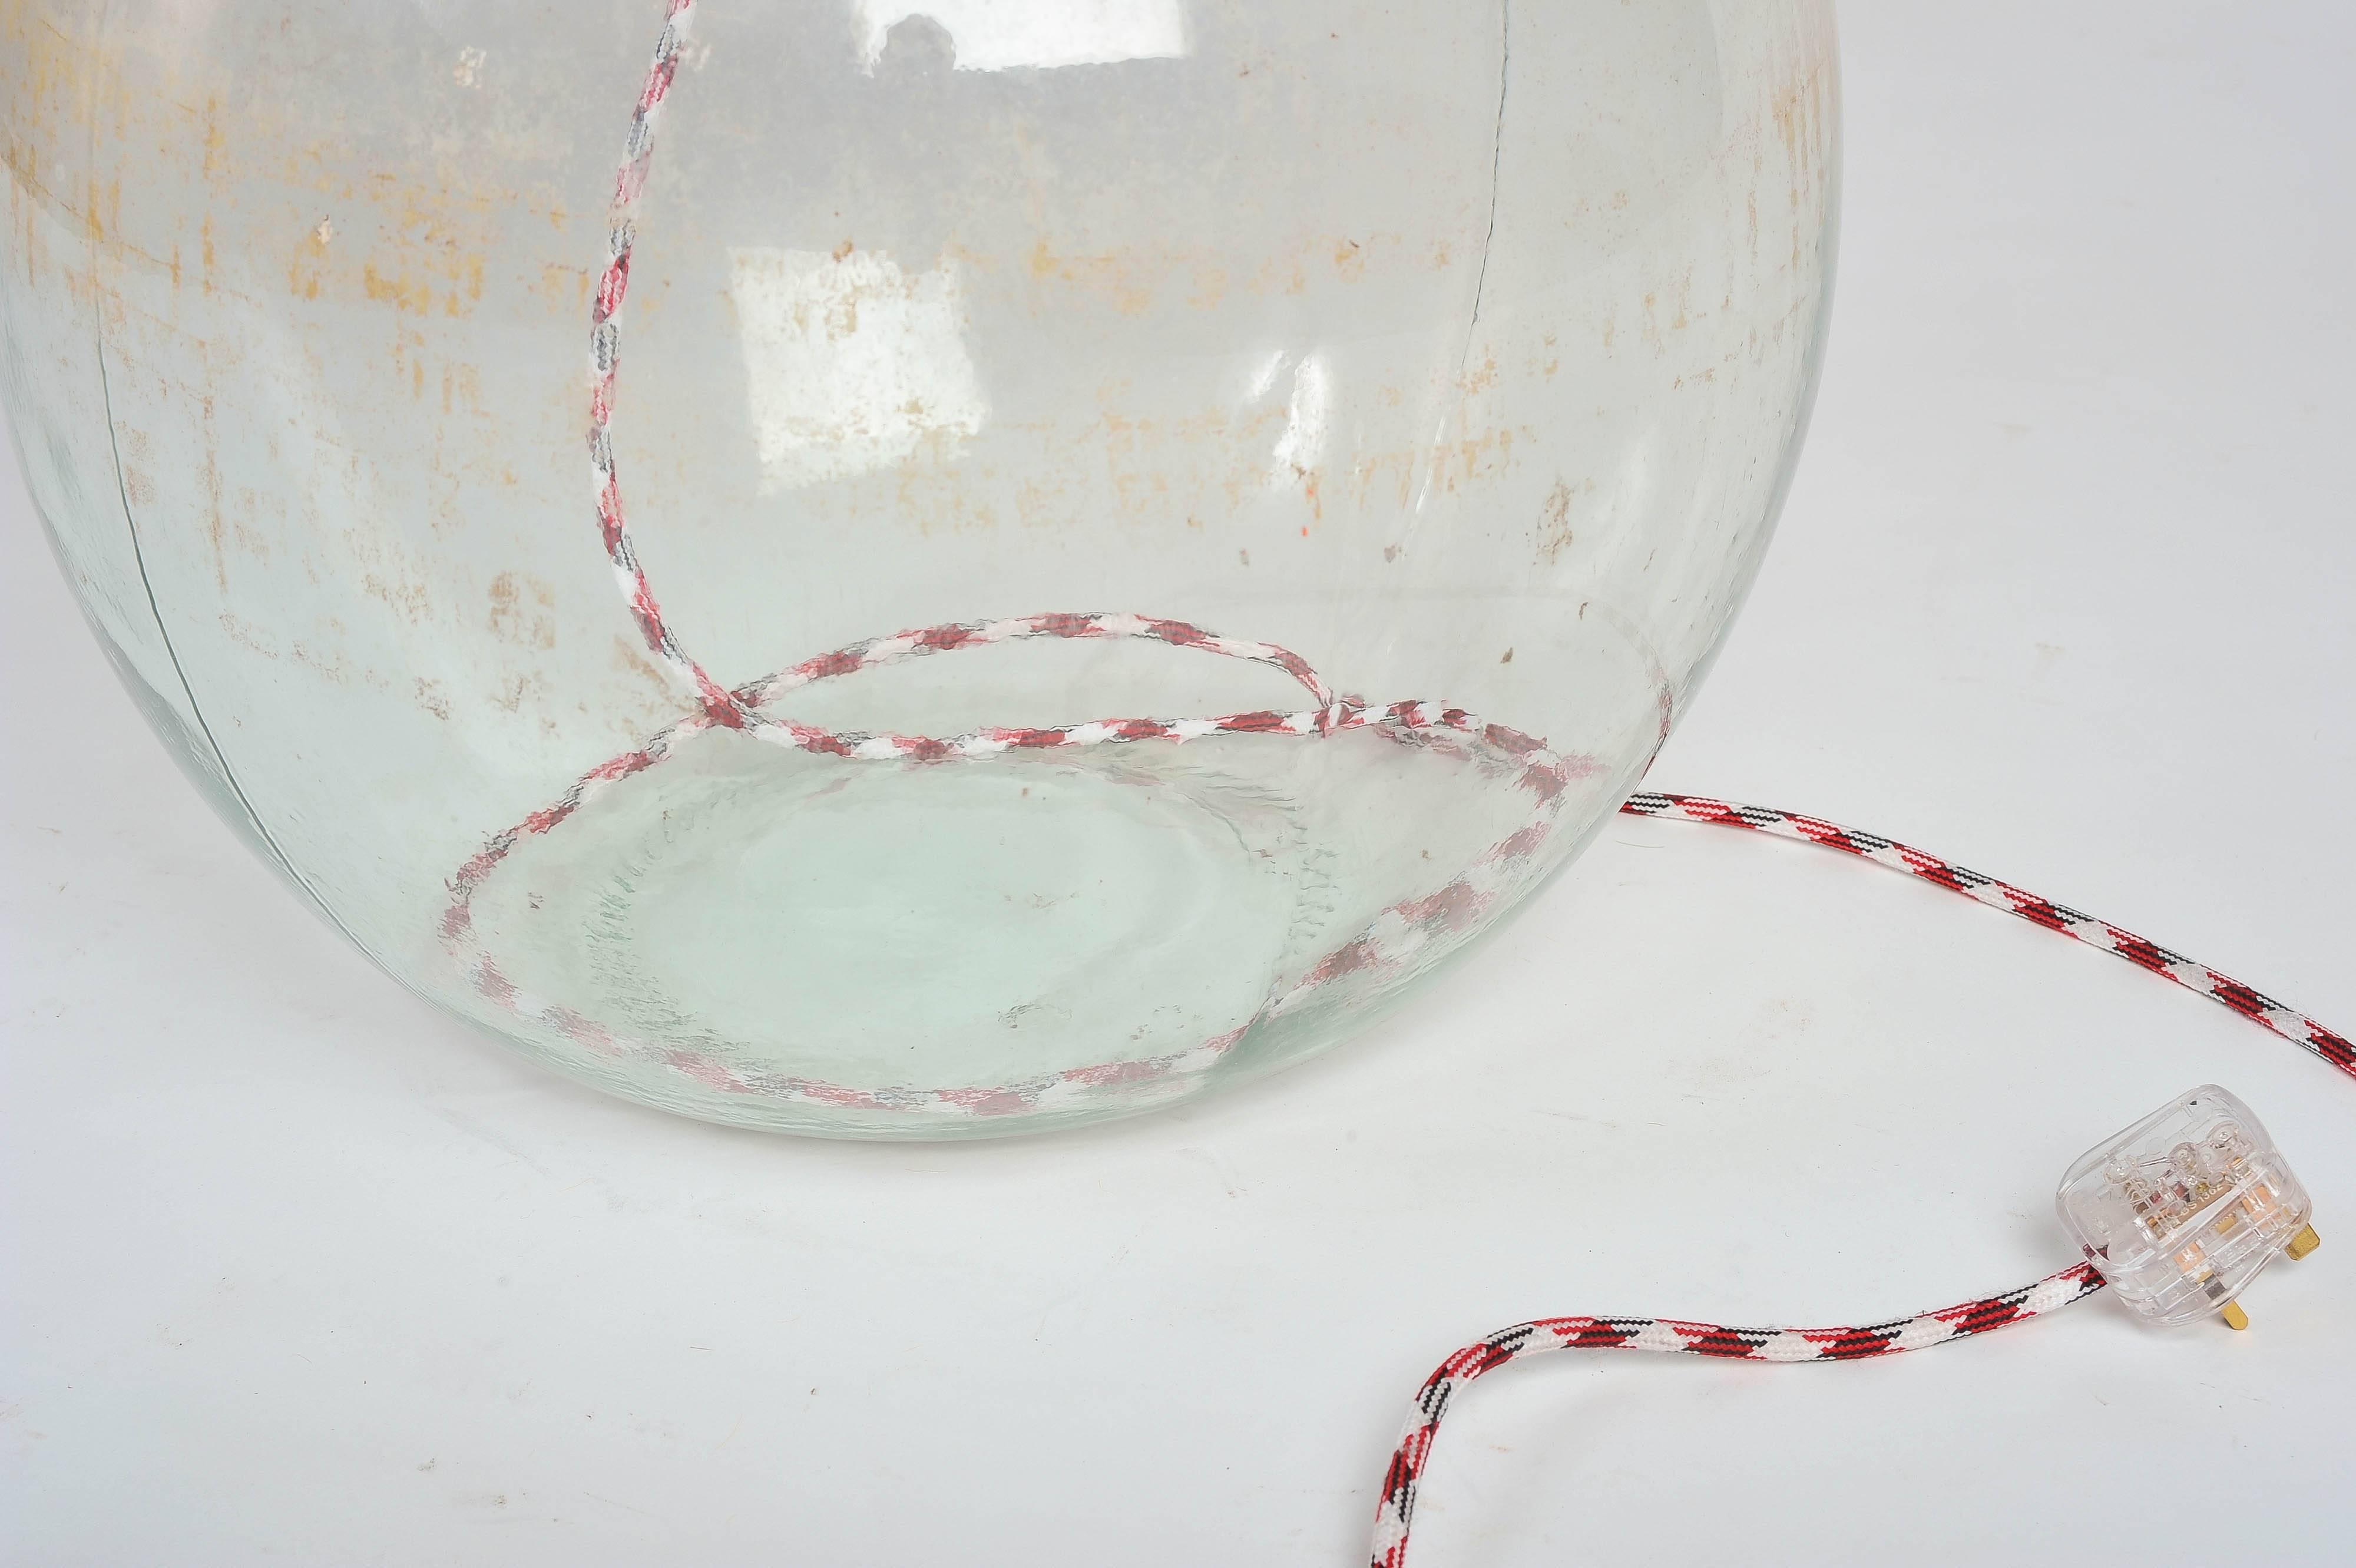 19th-century Demijohn Glass Bottles Side Table Lamp For Sale 1